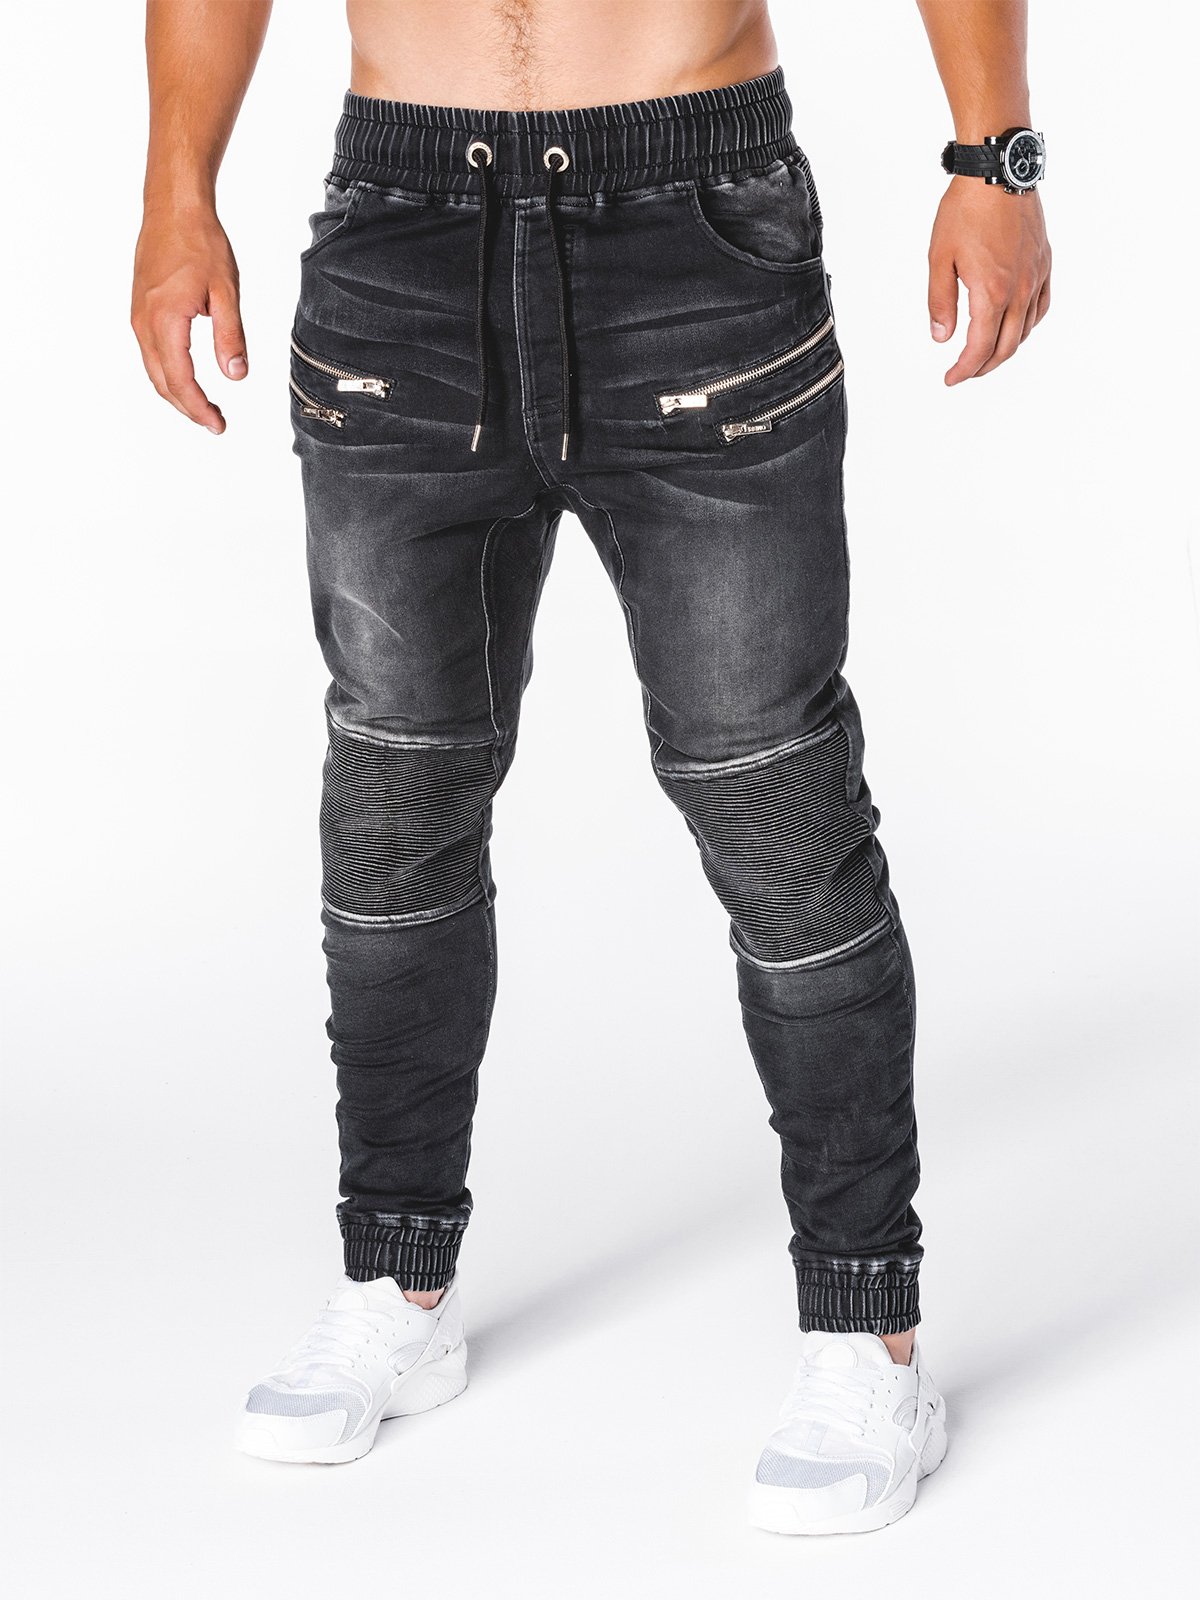 Men's jeans joggers P405 - black | MODONE wholesale - Clothing For Men